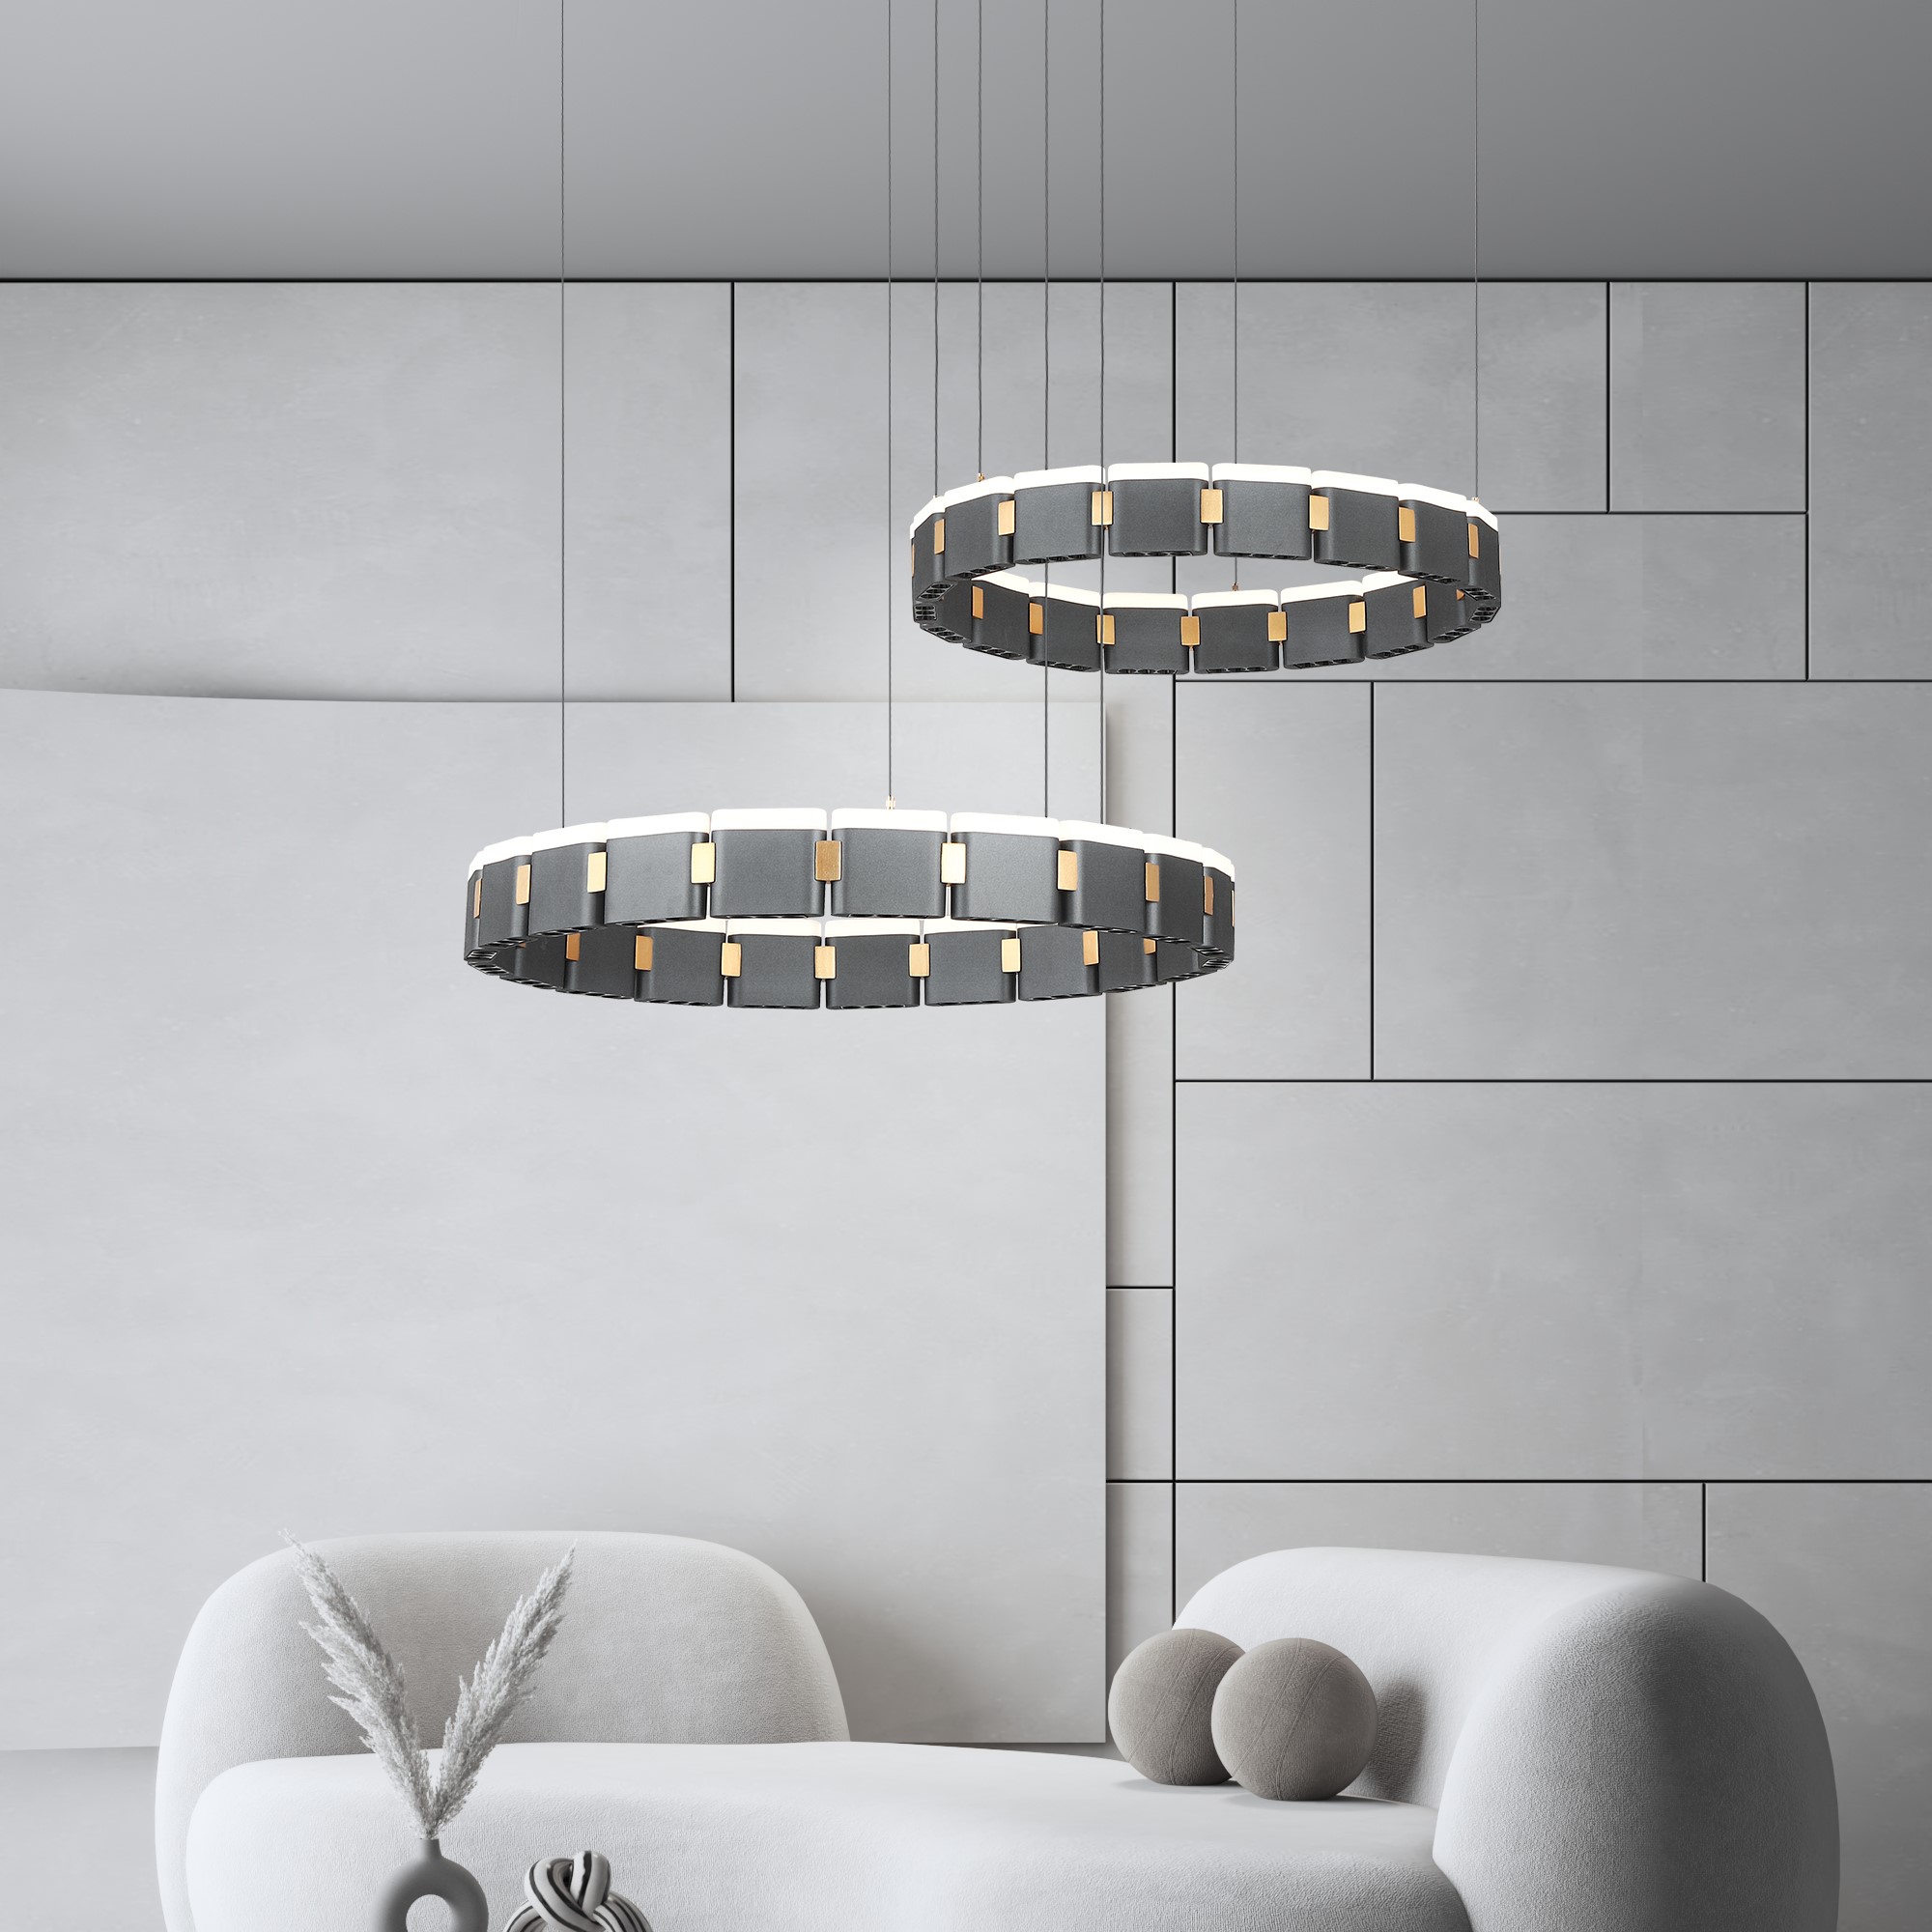 Postmodern stainless steel luxury living room pendant lamp